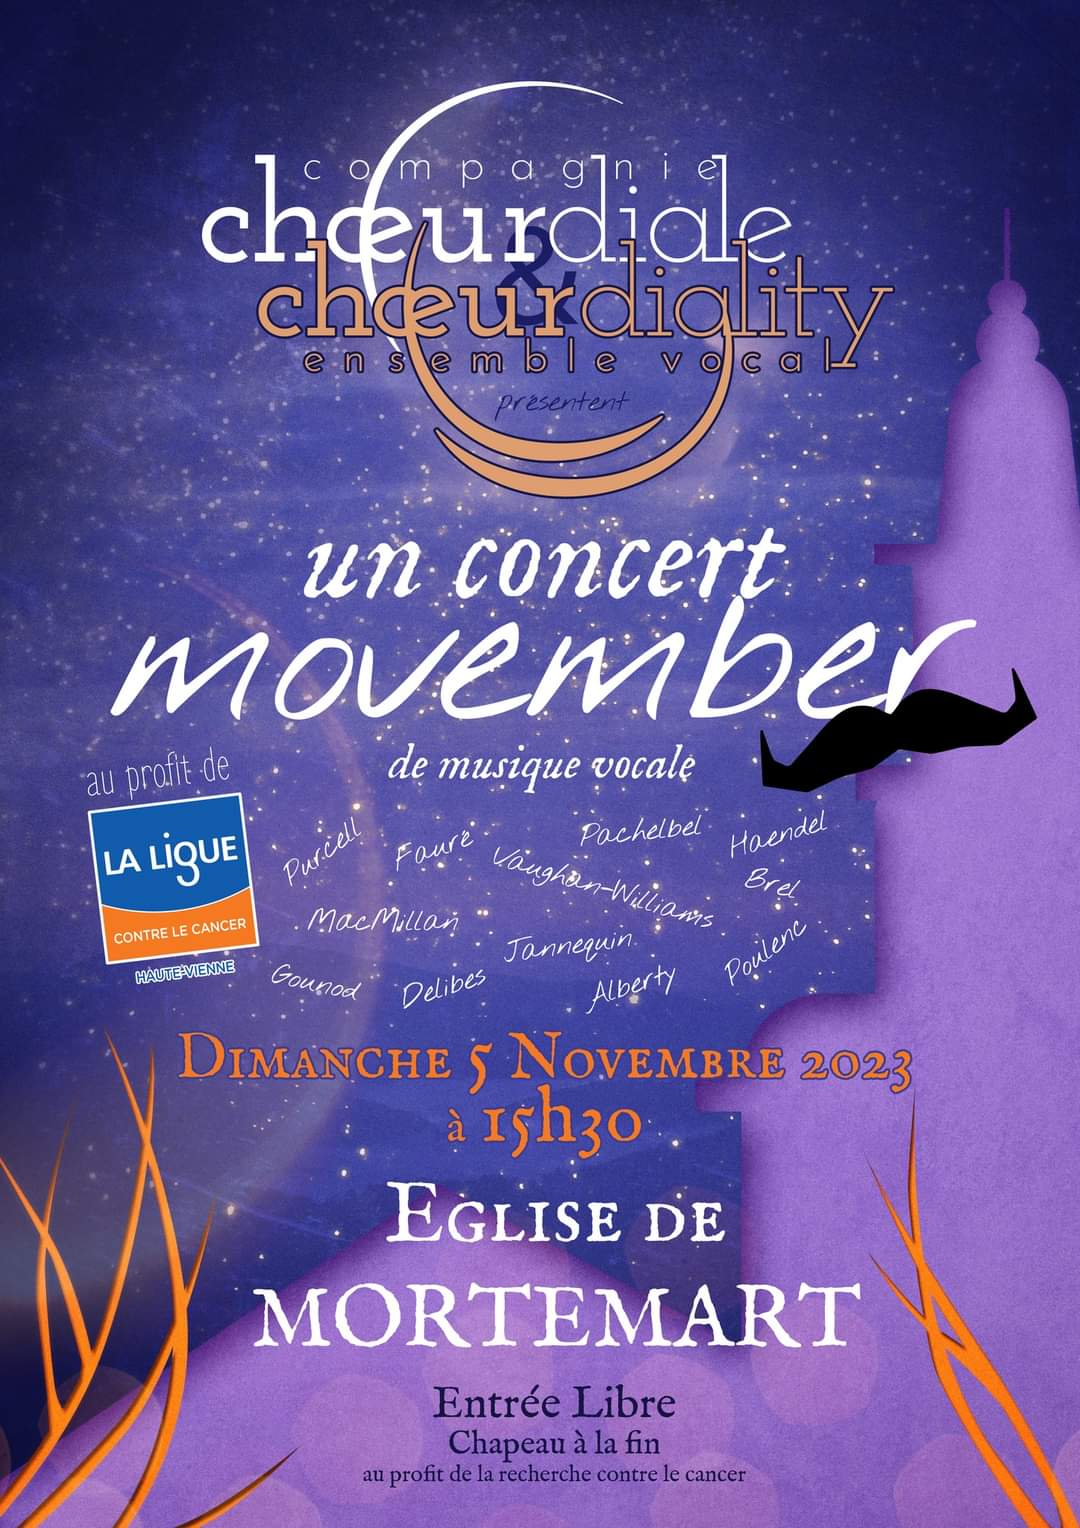 Concert en l’Eglise de Mortemart le 5 novembre à 15h30